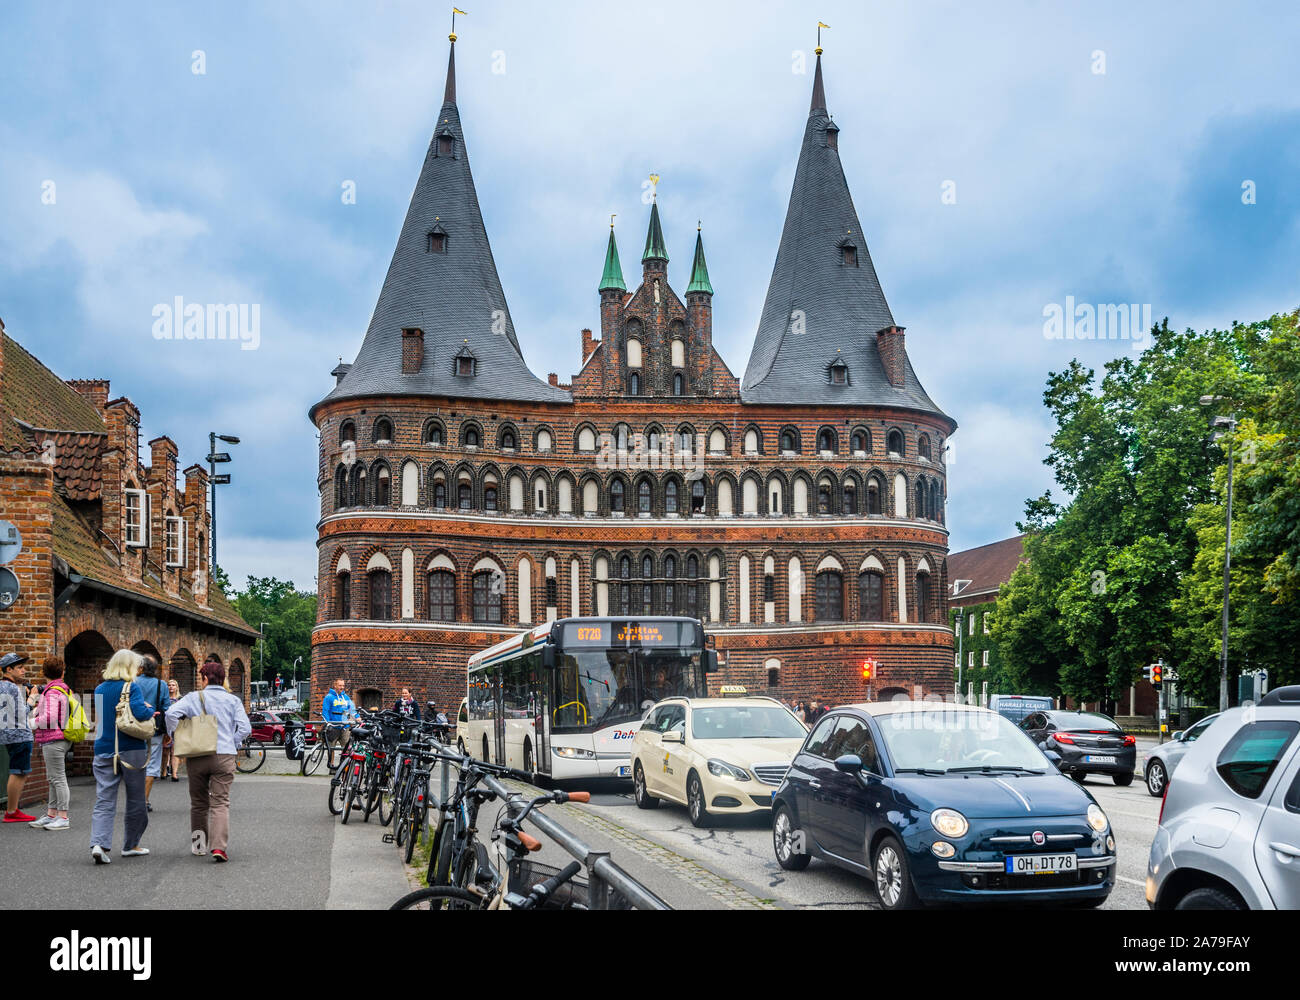 Le trafic important à Lübeck Holstentor, emblématique de la ville hanséatique de Lübeck, Schleswig-Holstein, Allemagne du nord Banque D'Images